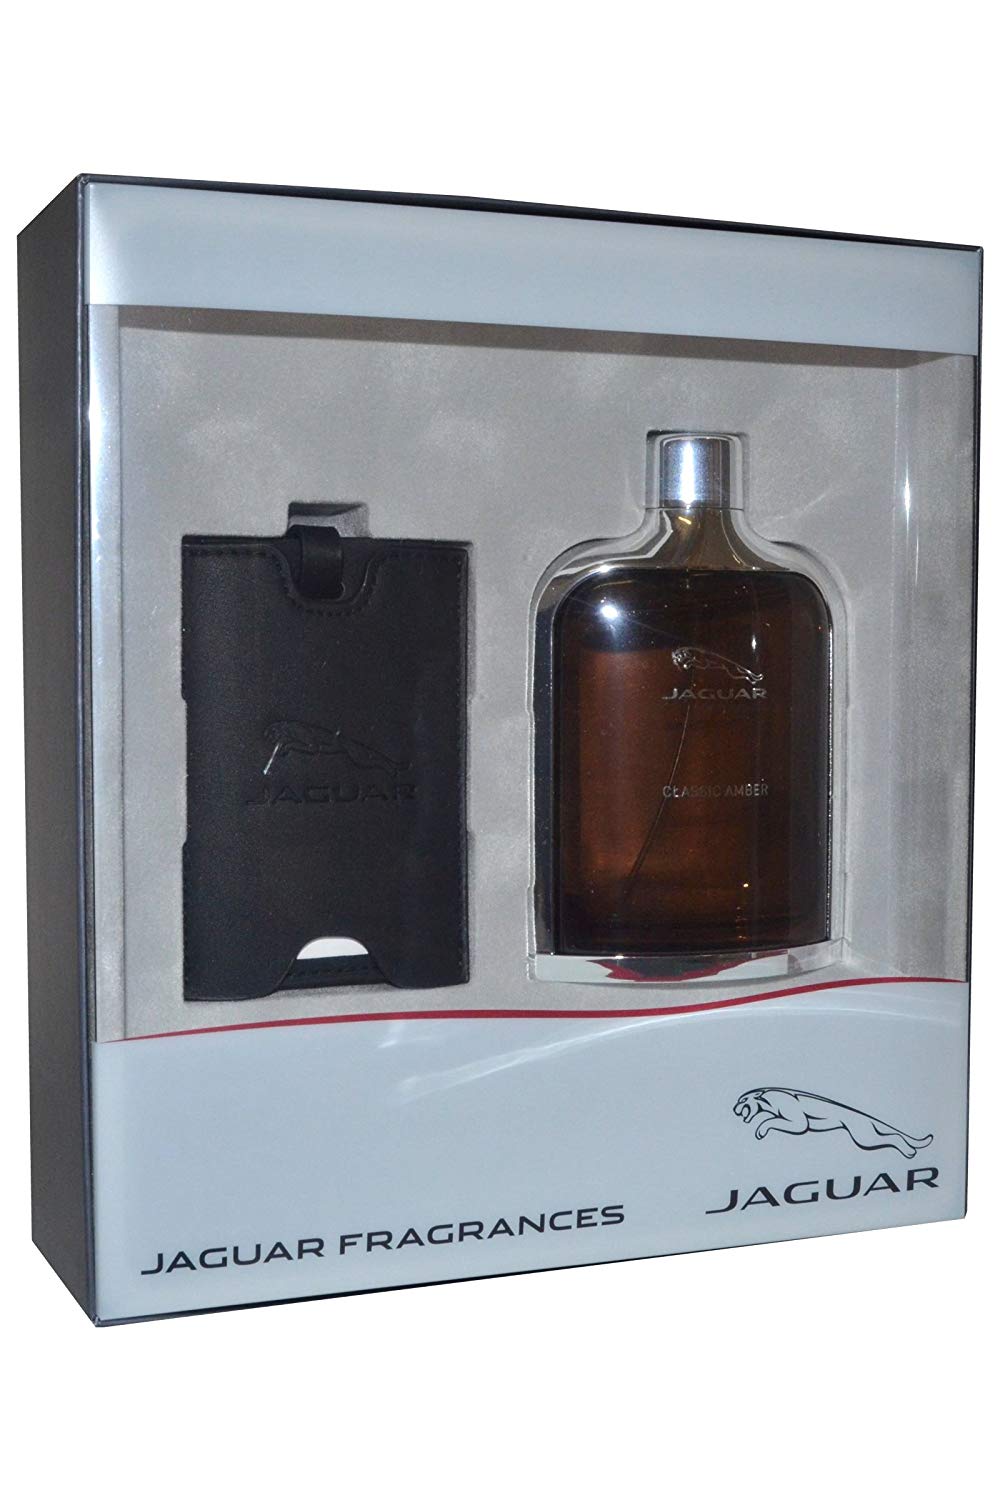 Jaguar Classic Amber Gift Set 100ml Eau de toilette EDT + Luggage Tag